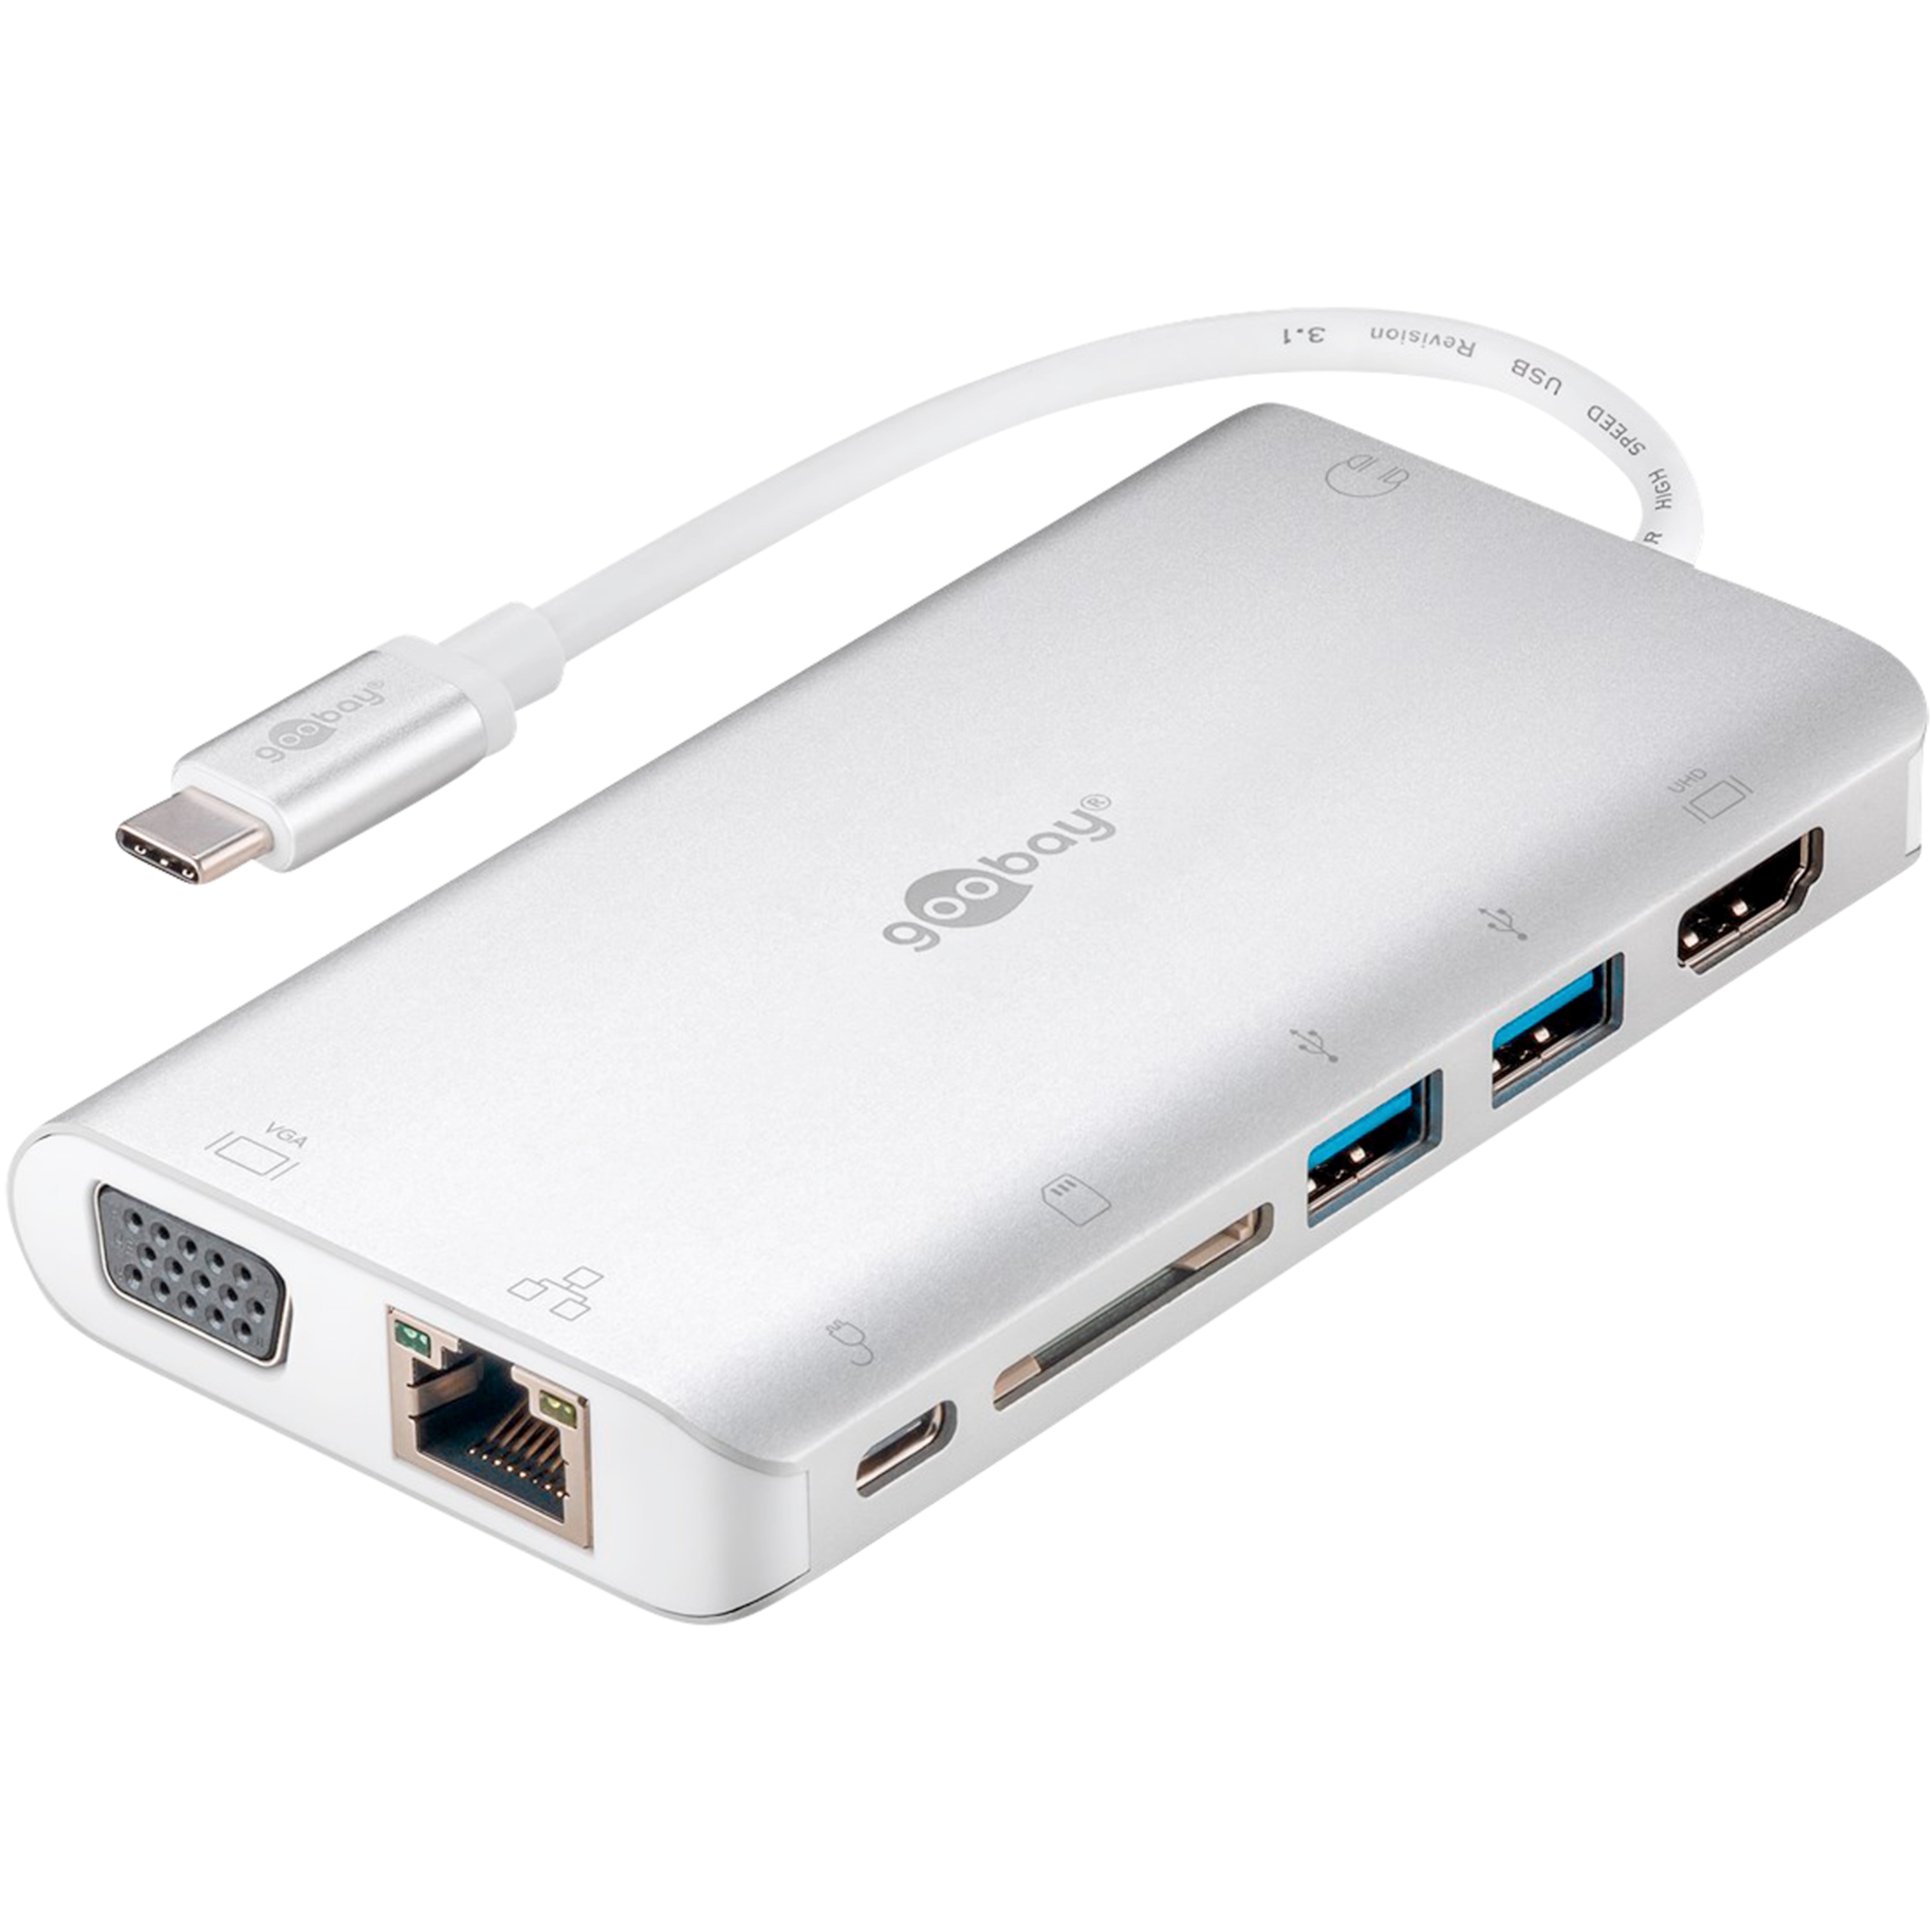 WENTRONIC USB-C™ Premium Multiport-Adapter,  erweitert ein USB-C™ Gerät um weitverbreitesten/gängigsten Anschlüsse, perfekte All-in-One-Lösung